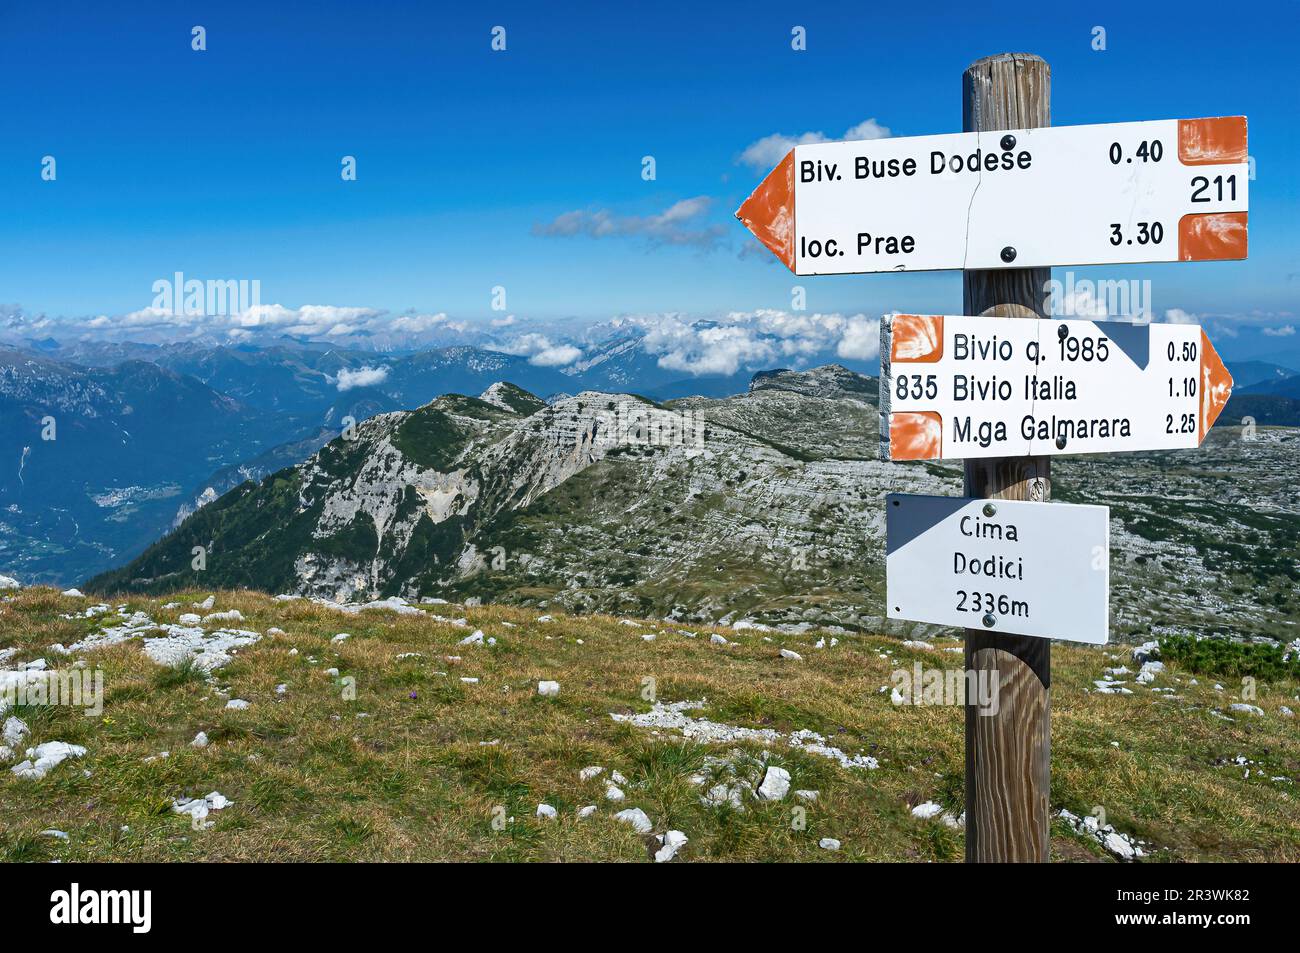 9 settembre 2020, Asiago, Italia: Indicazioni per escursionisti a cima Dodici Foto Stock